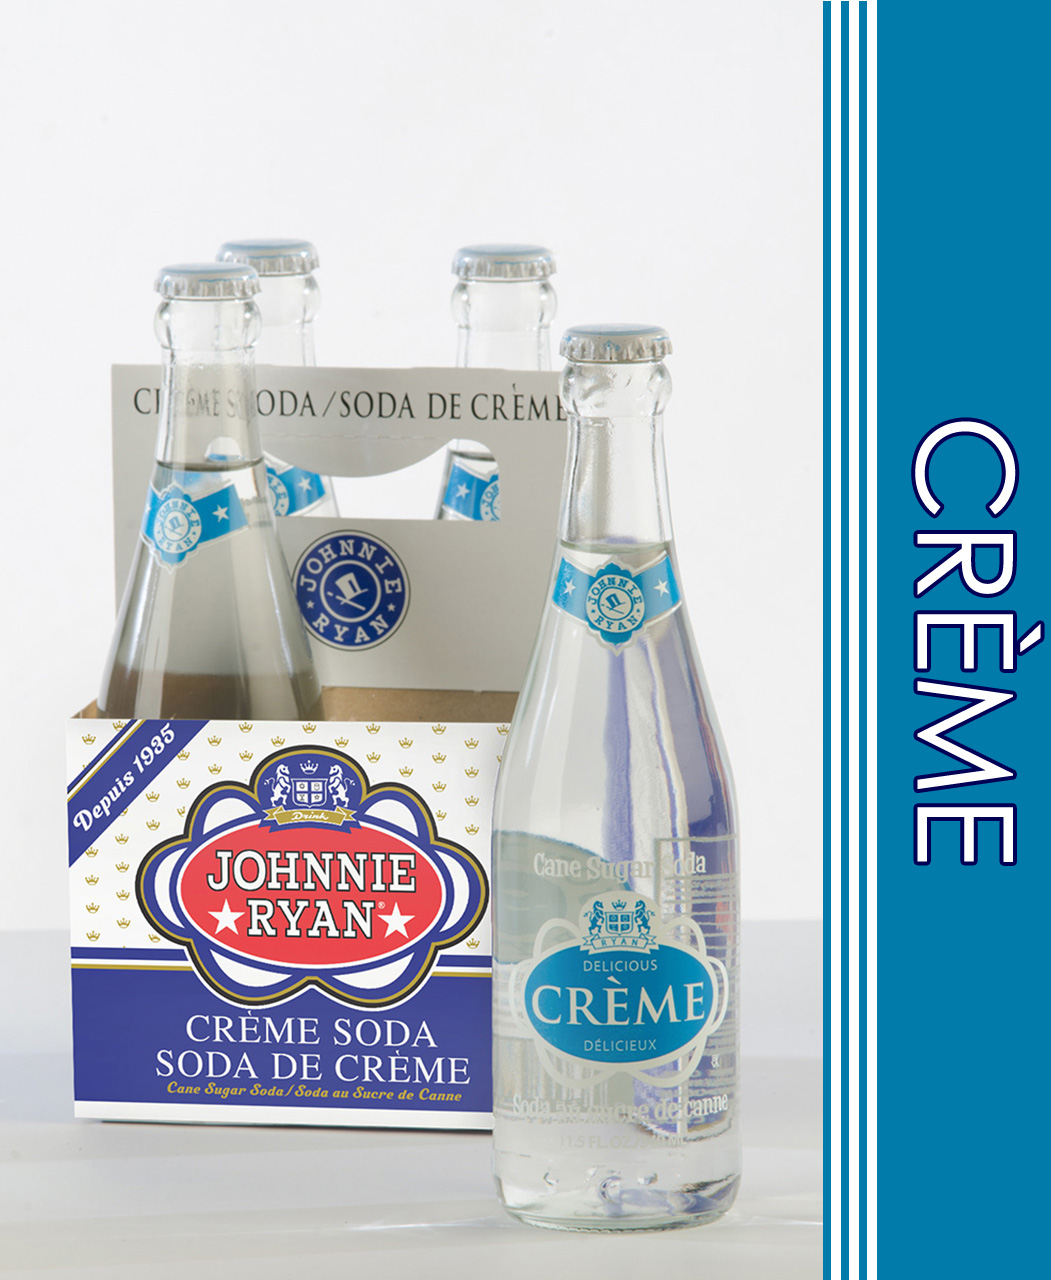 Creme Soda cane sugar soda from Johnnie Ryan beverages in Niagara Falls, NY.